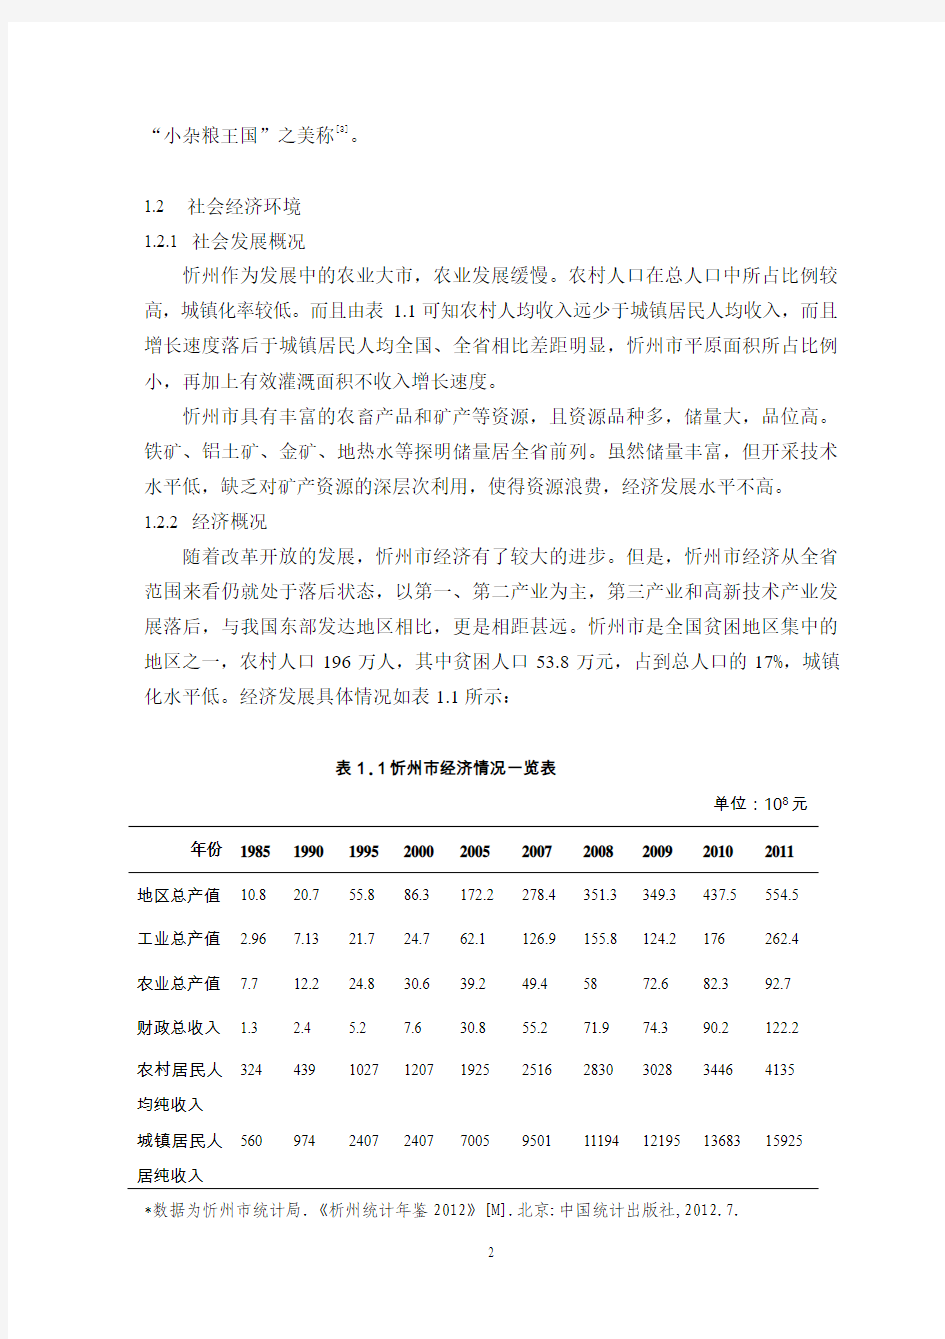 忻州市环境污染现状及治理对策6.22 - 副本